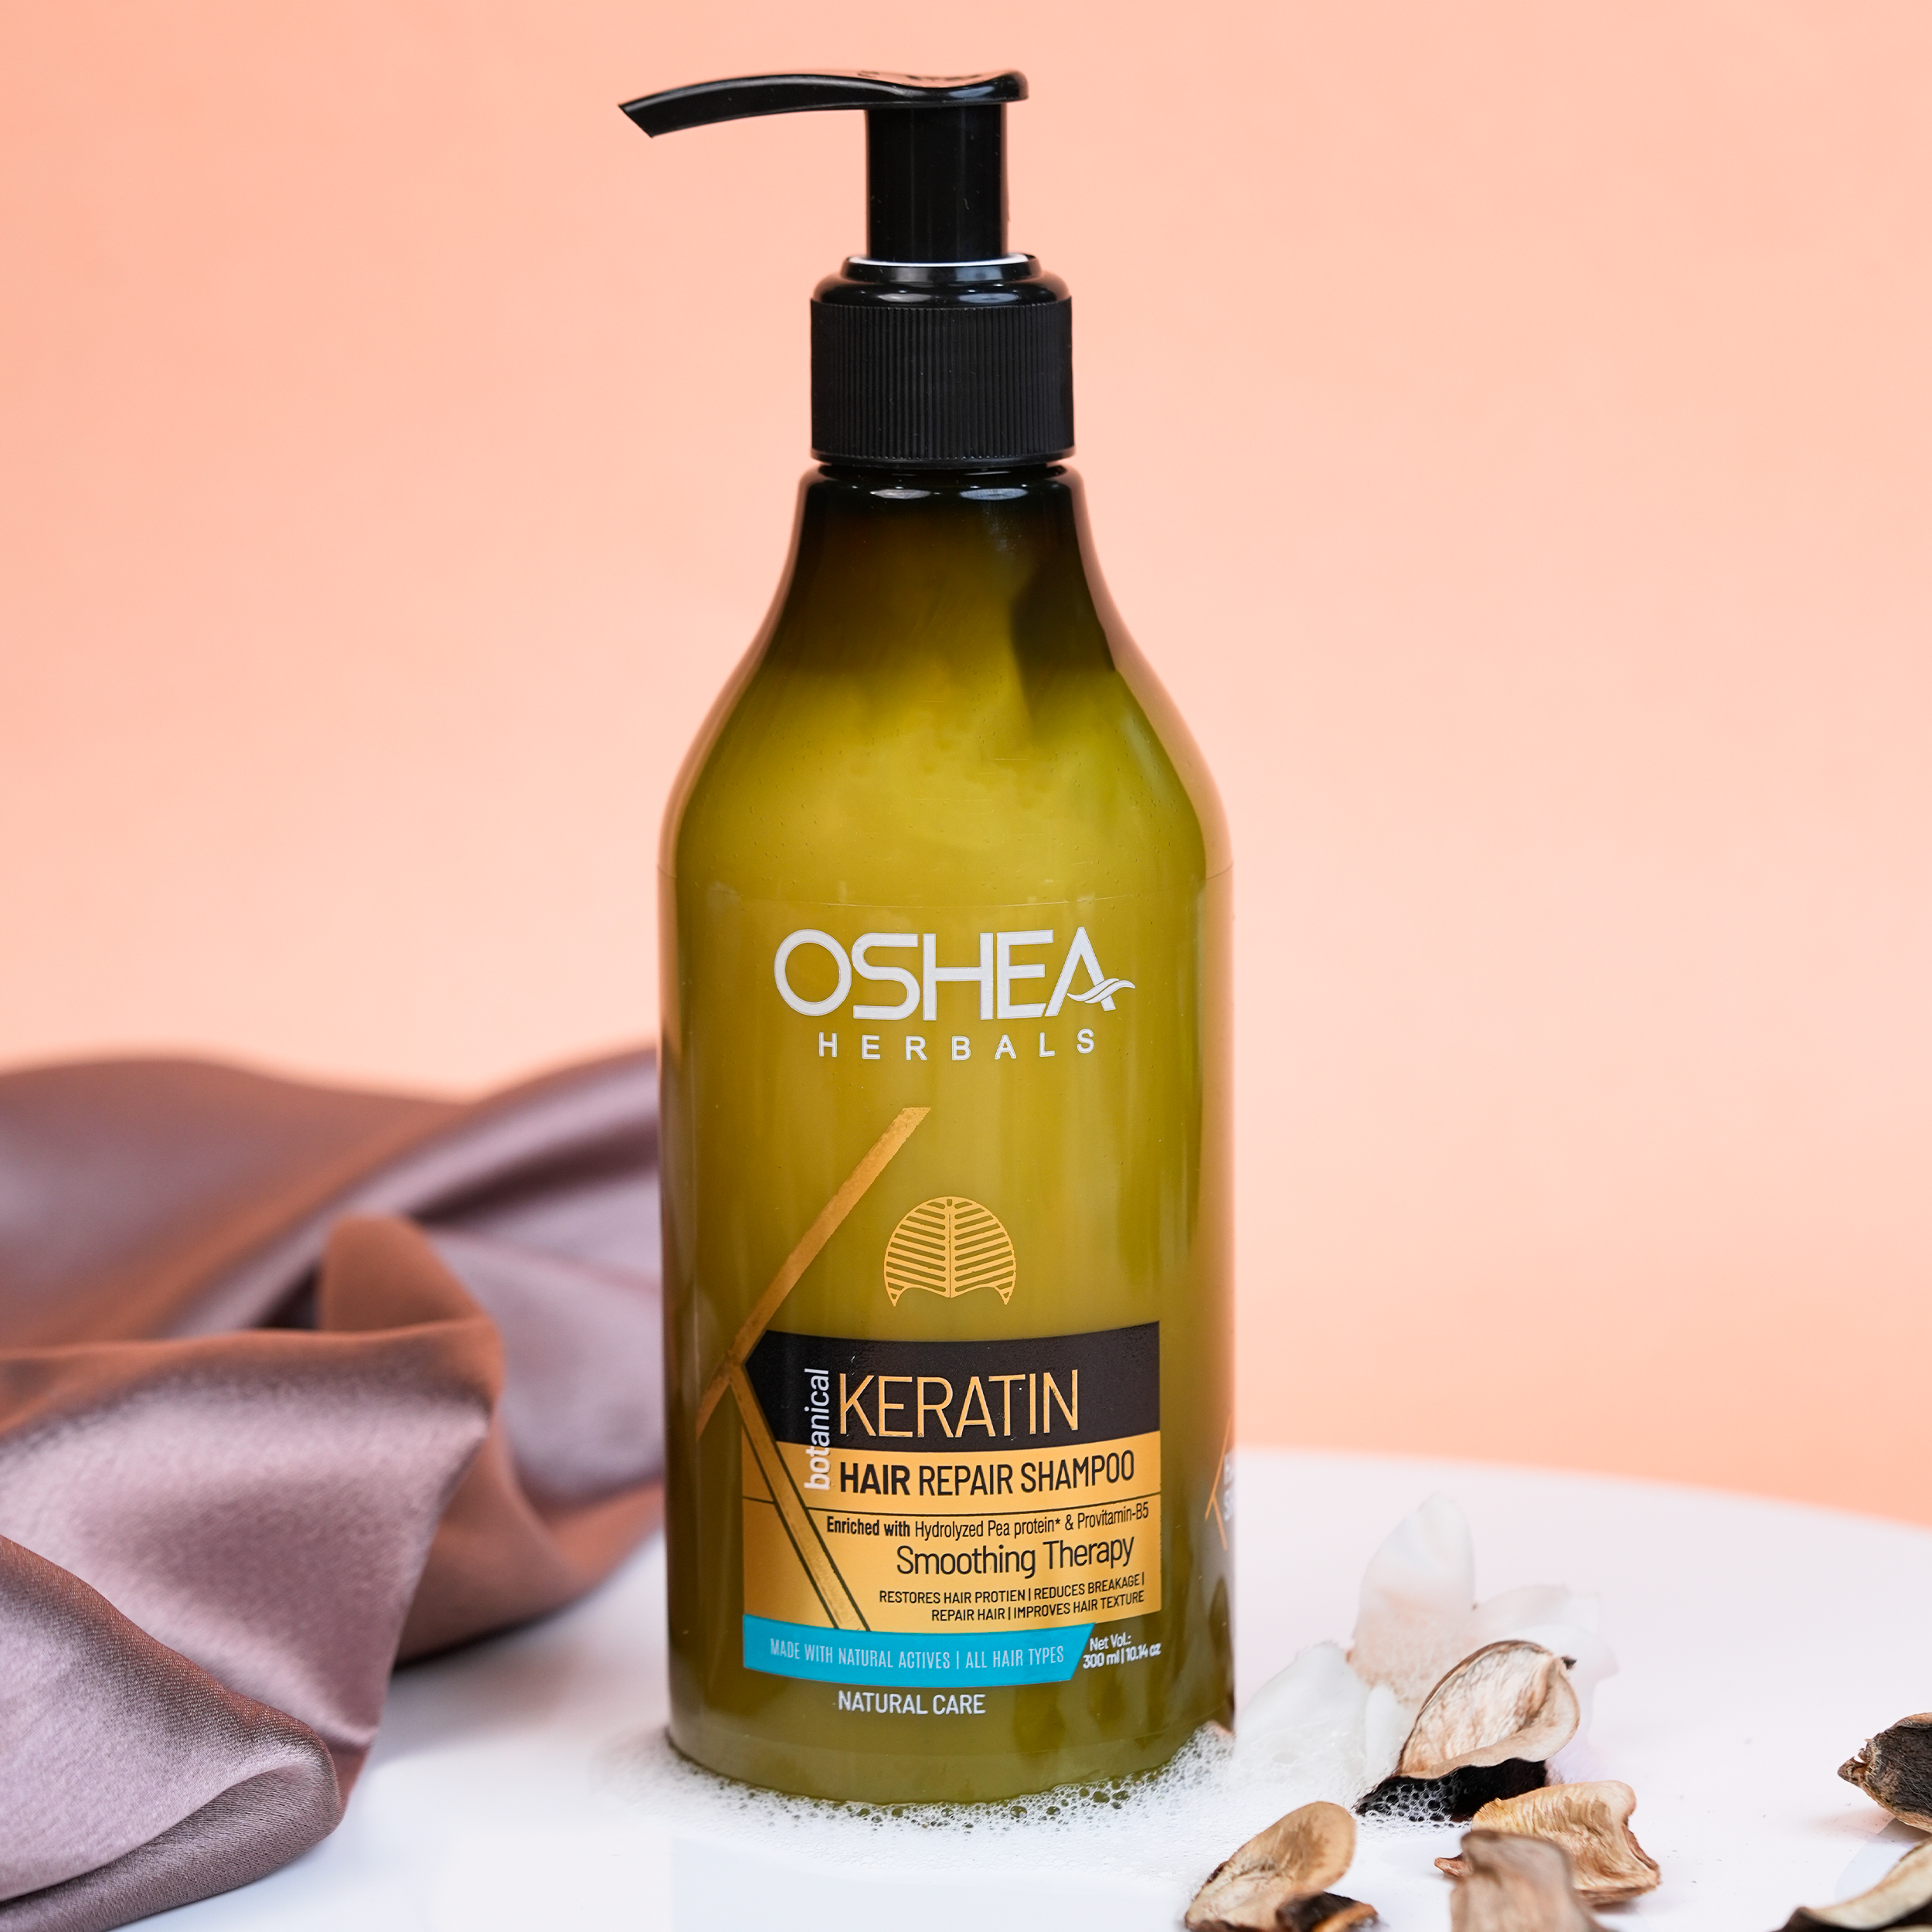  Keratin Hair Repair Shampoo Oshea Herbals